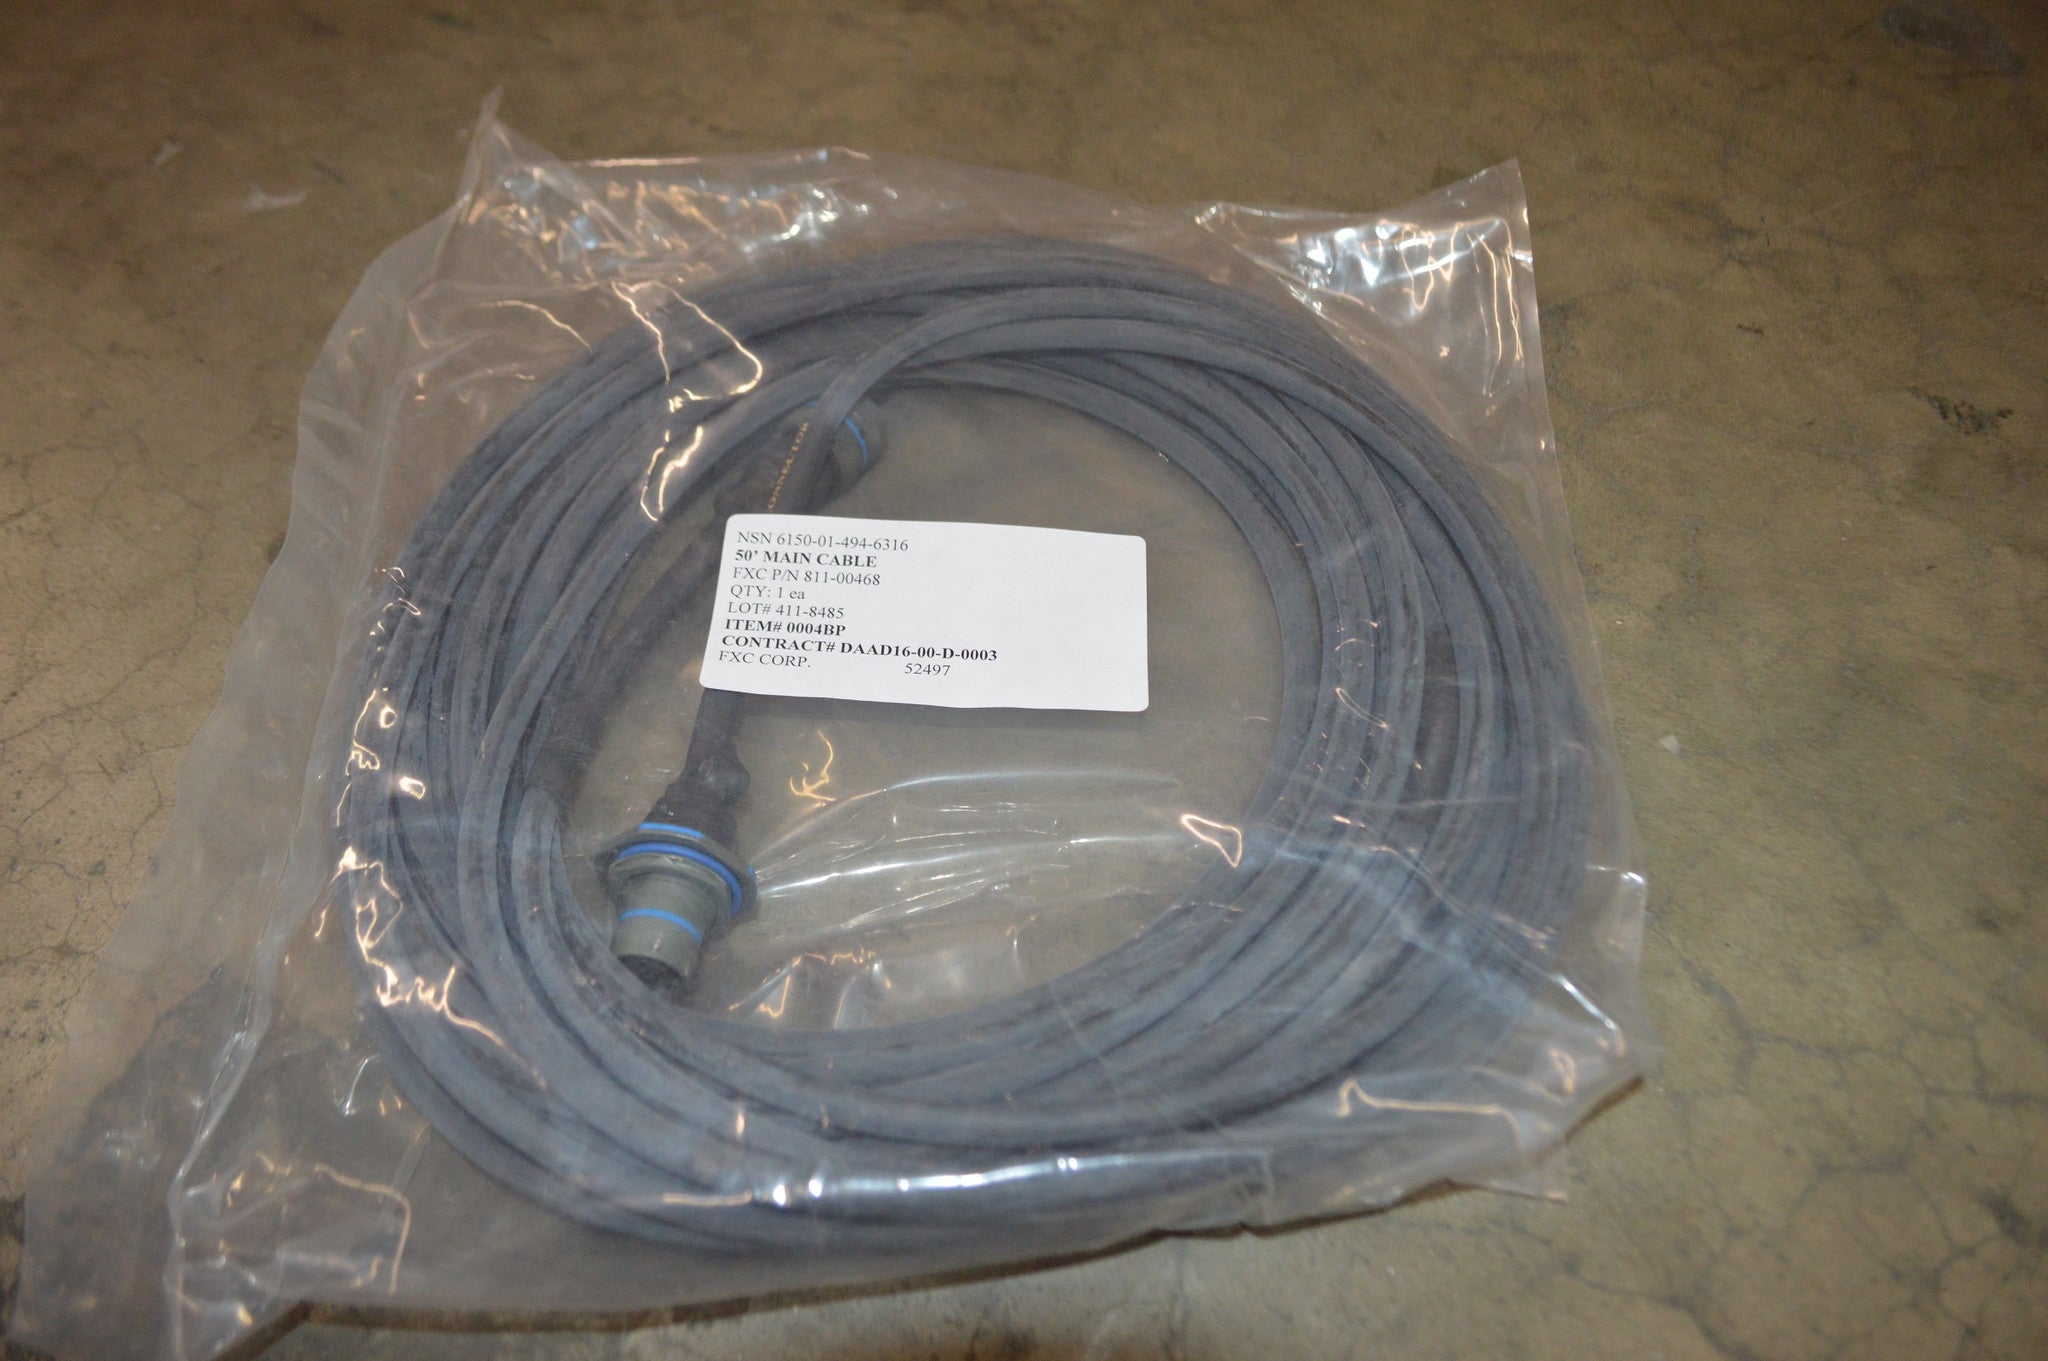 Main Cable NSN:6150-01-494-6316 P/N:11-1-7283